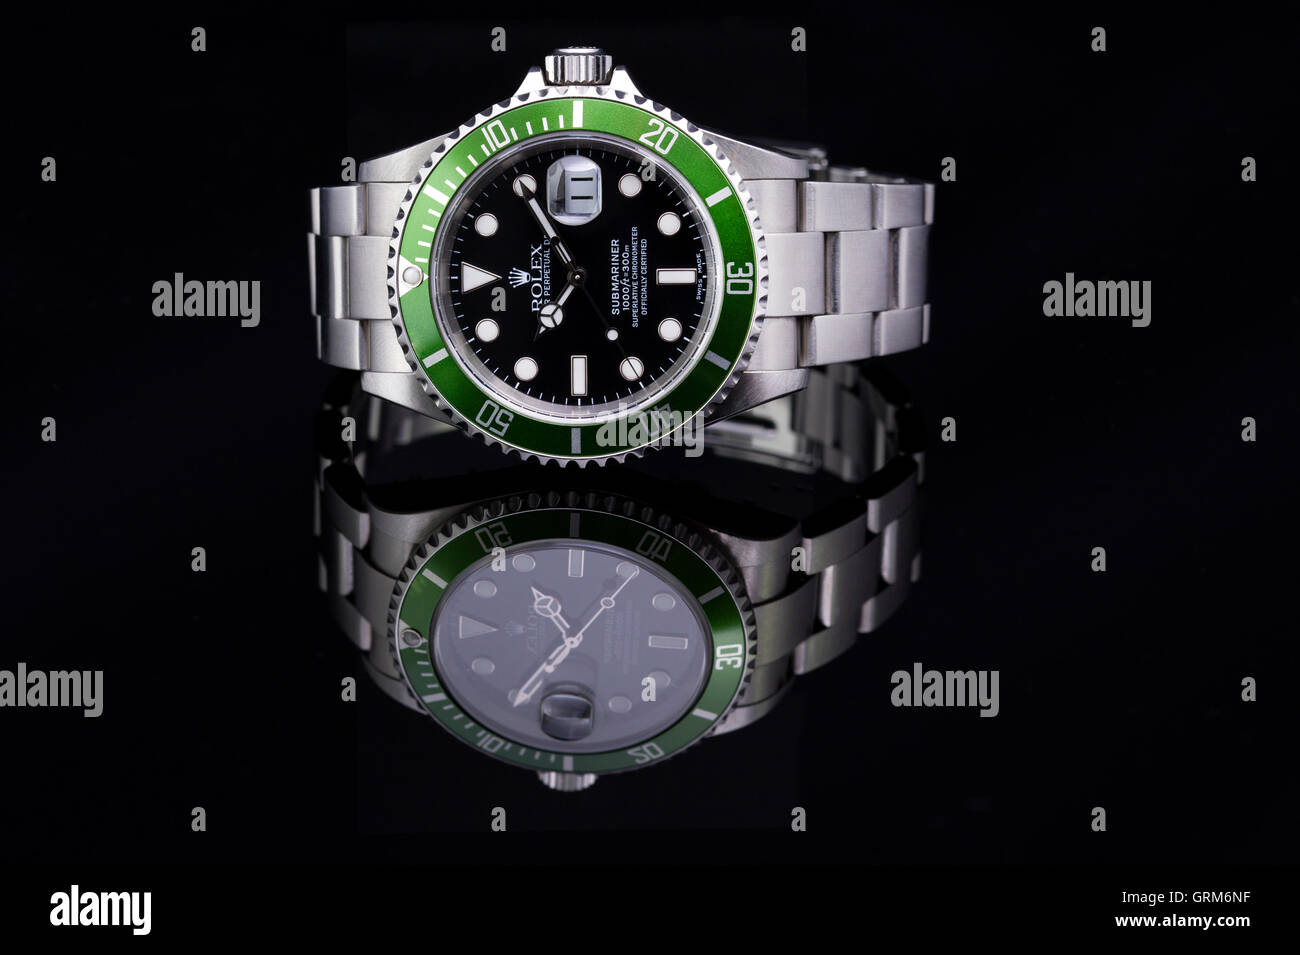 Grüne Rolex Submariner watch auf schwarzem Hintergrund reflektiert  Stockfotografie - Alamy